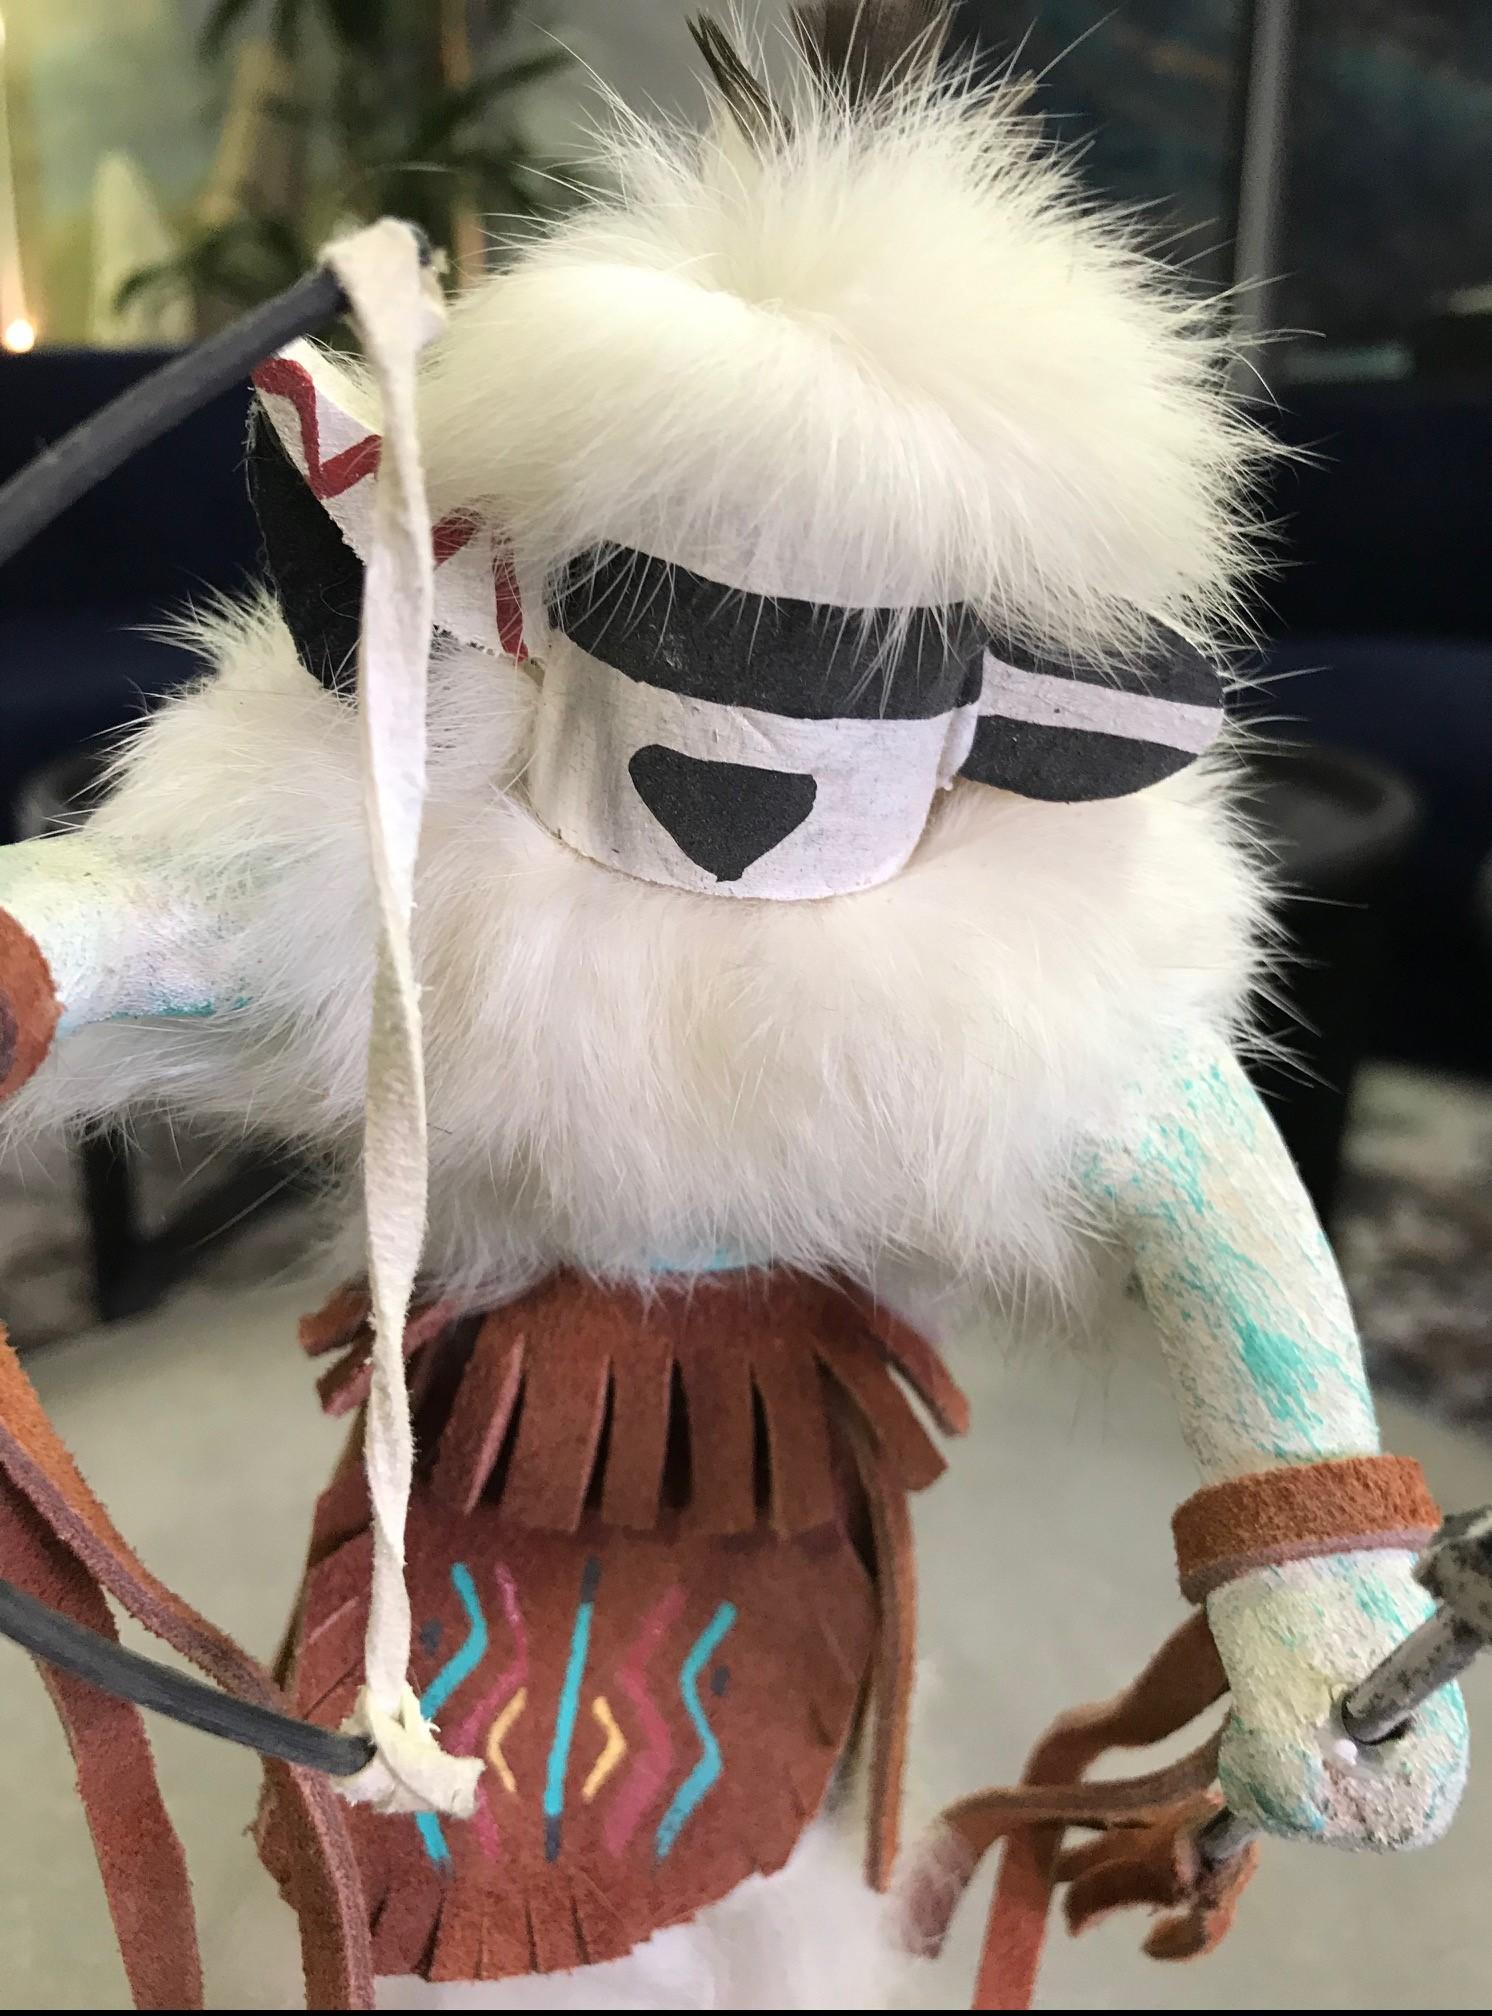 Une poupée Kachina merveilleusement détaillée et décorée avec une fourrure blanche.

Signé par l'artiste sur la base.

D'une collection d'objets et d'artefacts amérindiens.

Dimensions : 8